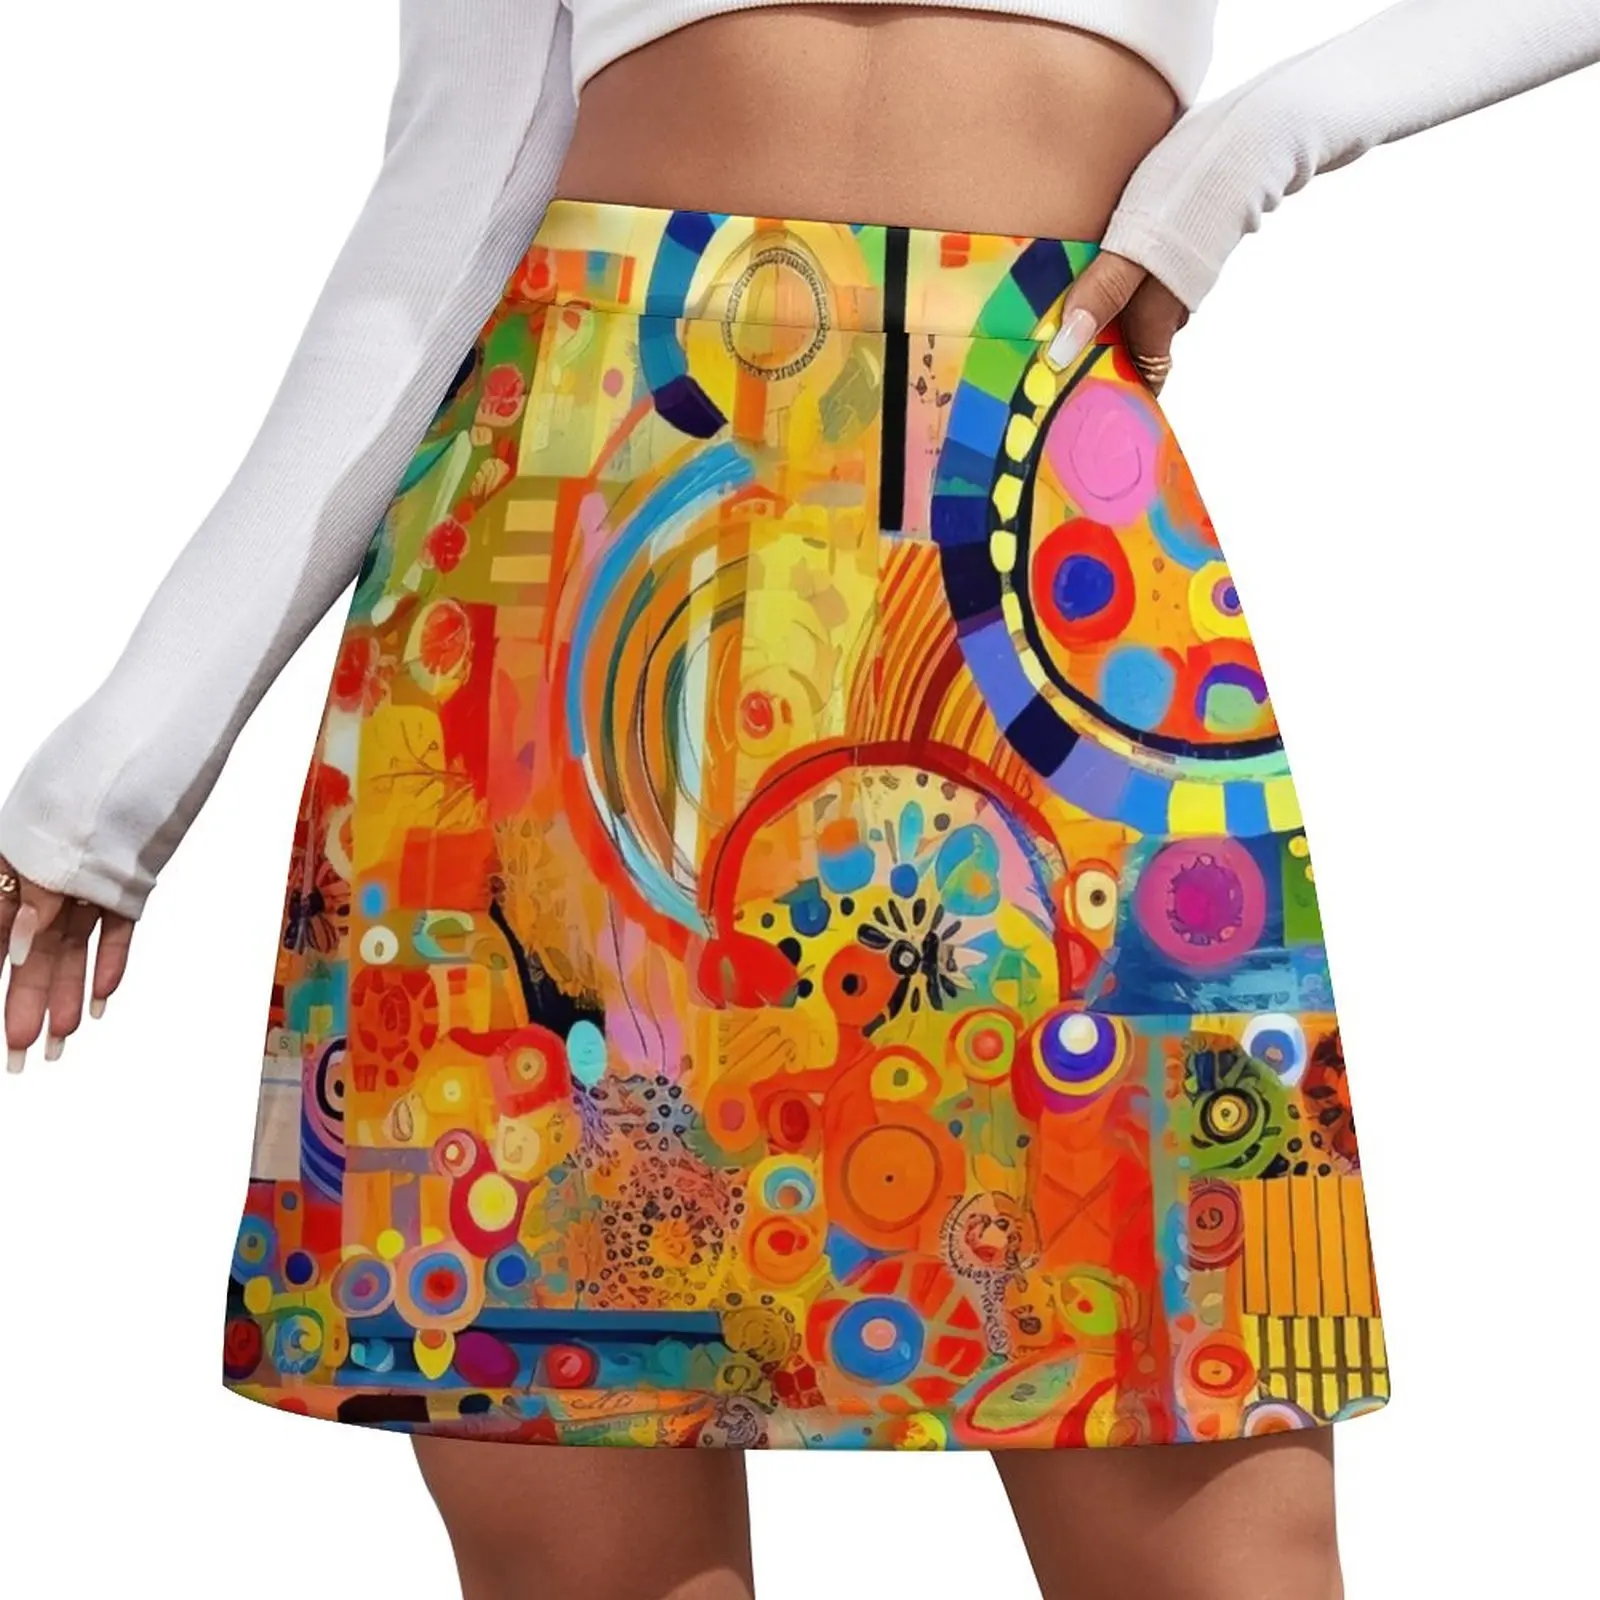 

Цветная мини-юбка Joy #3, шорты, микро мини-юбка, экстремальное женское платье